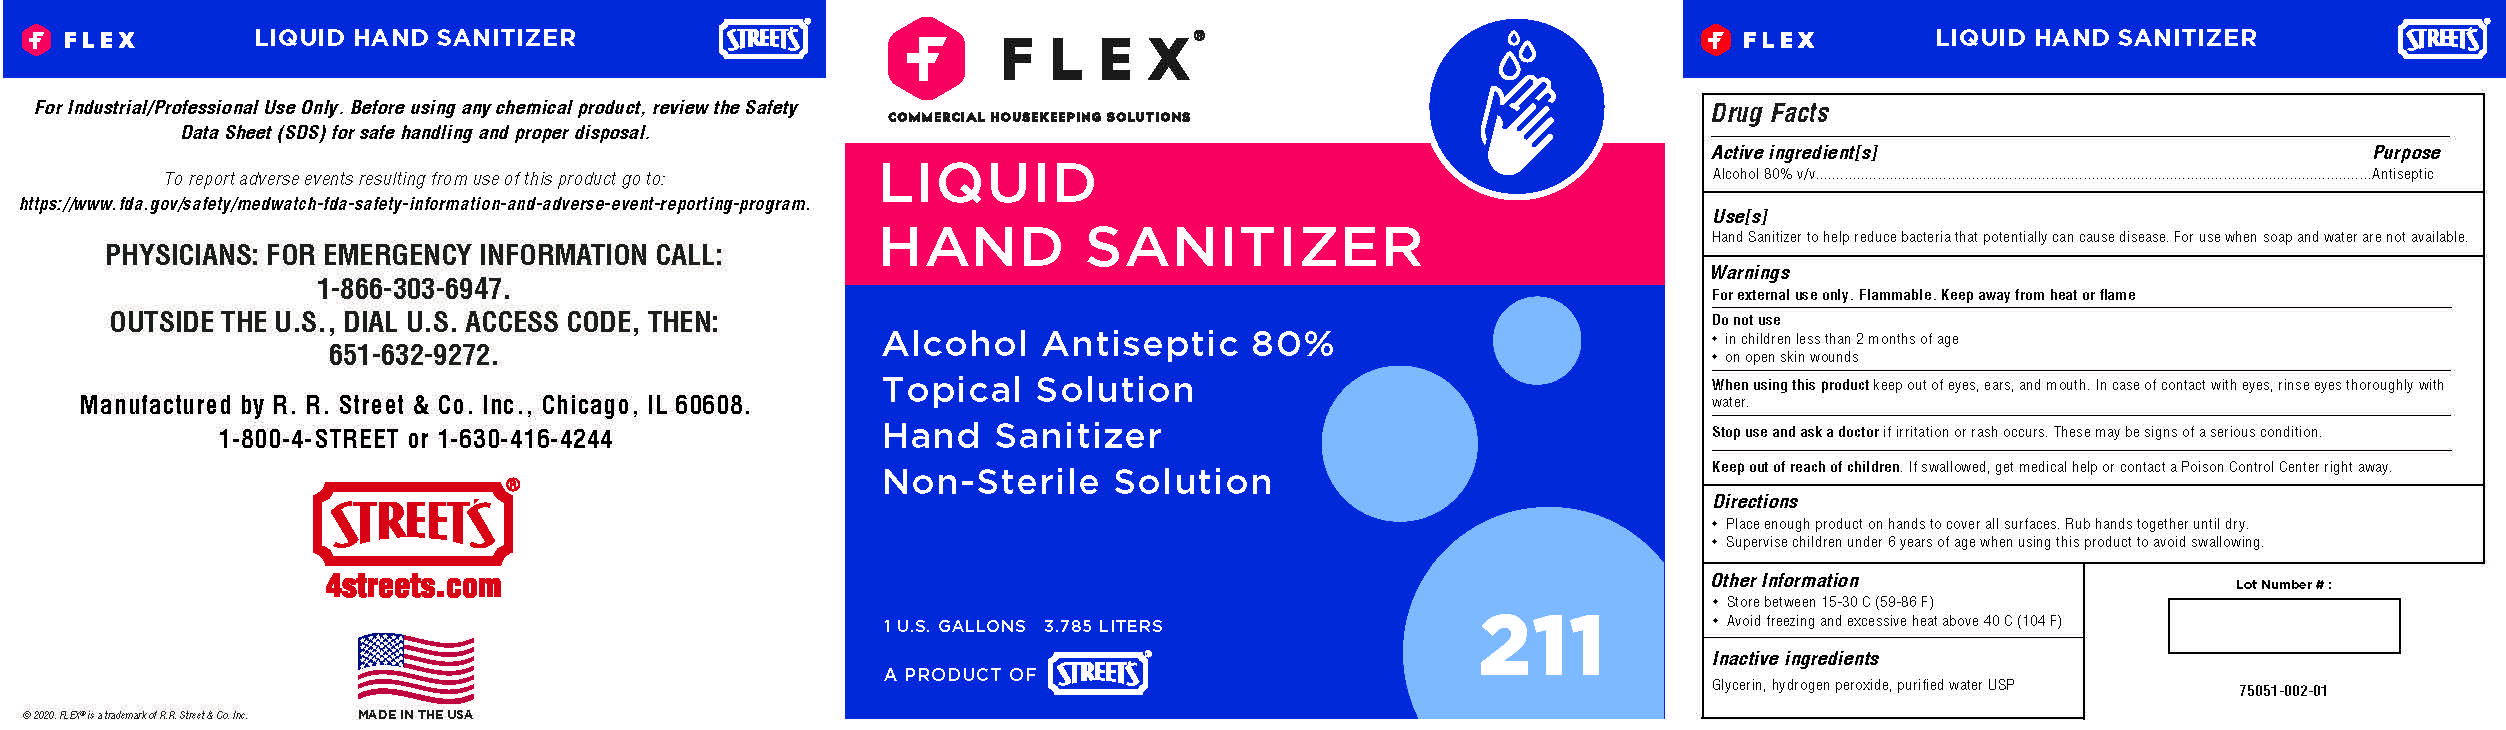 FLEX HAND SANITIZER 1 GAL